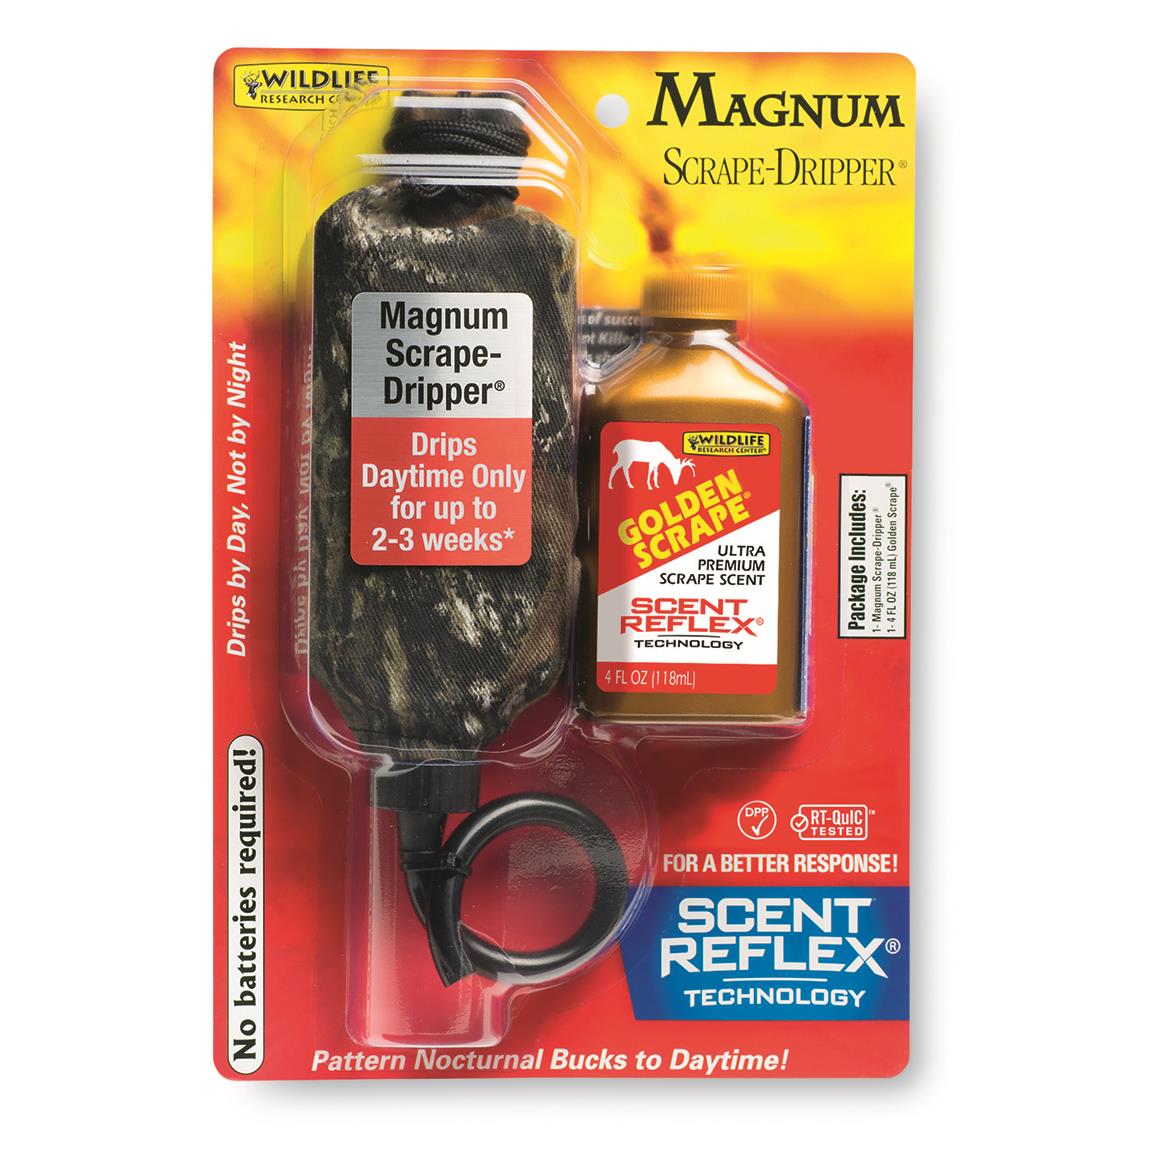 Wildlife Research Magnum Scrape-Dripper/Golden Scrape Combo